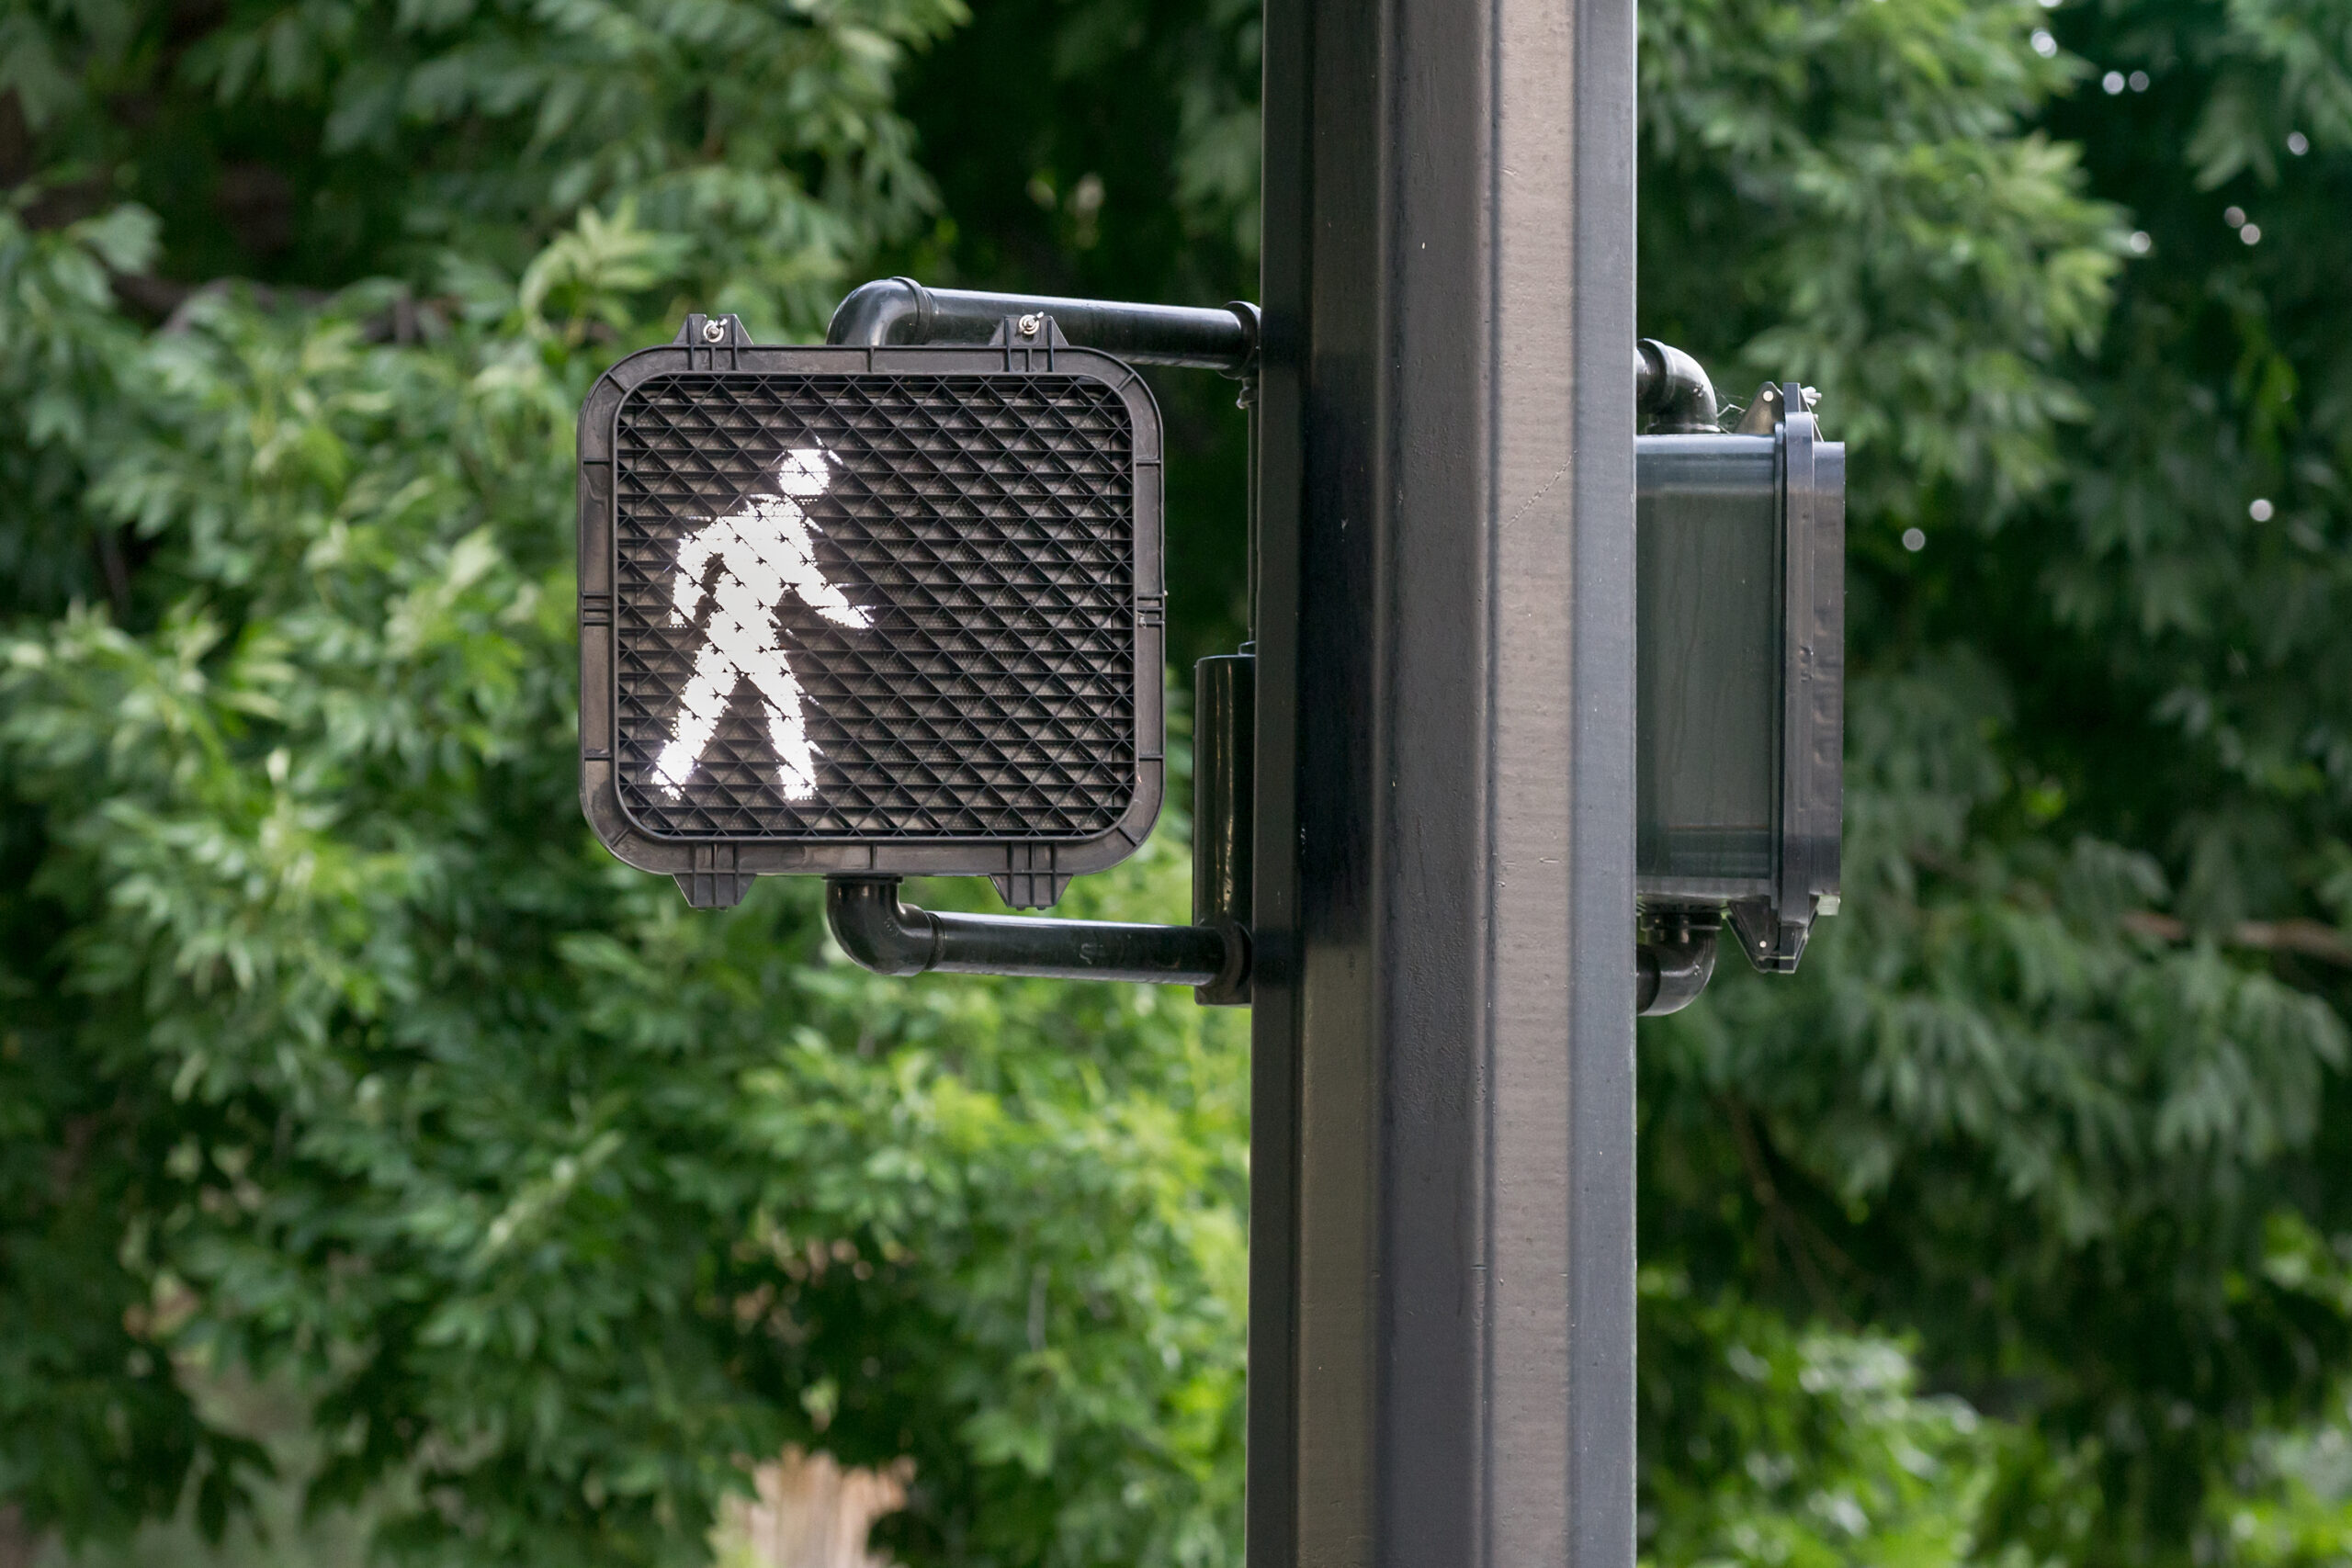 pedestrian traffic signals